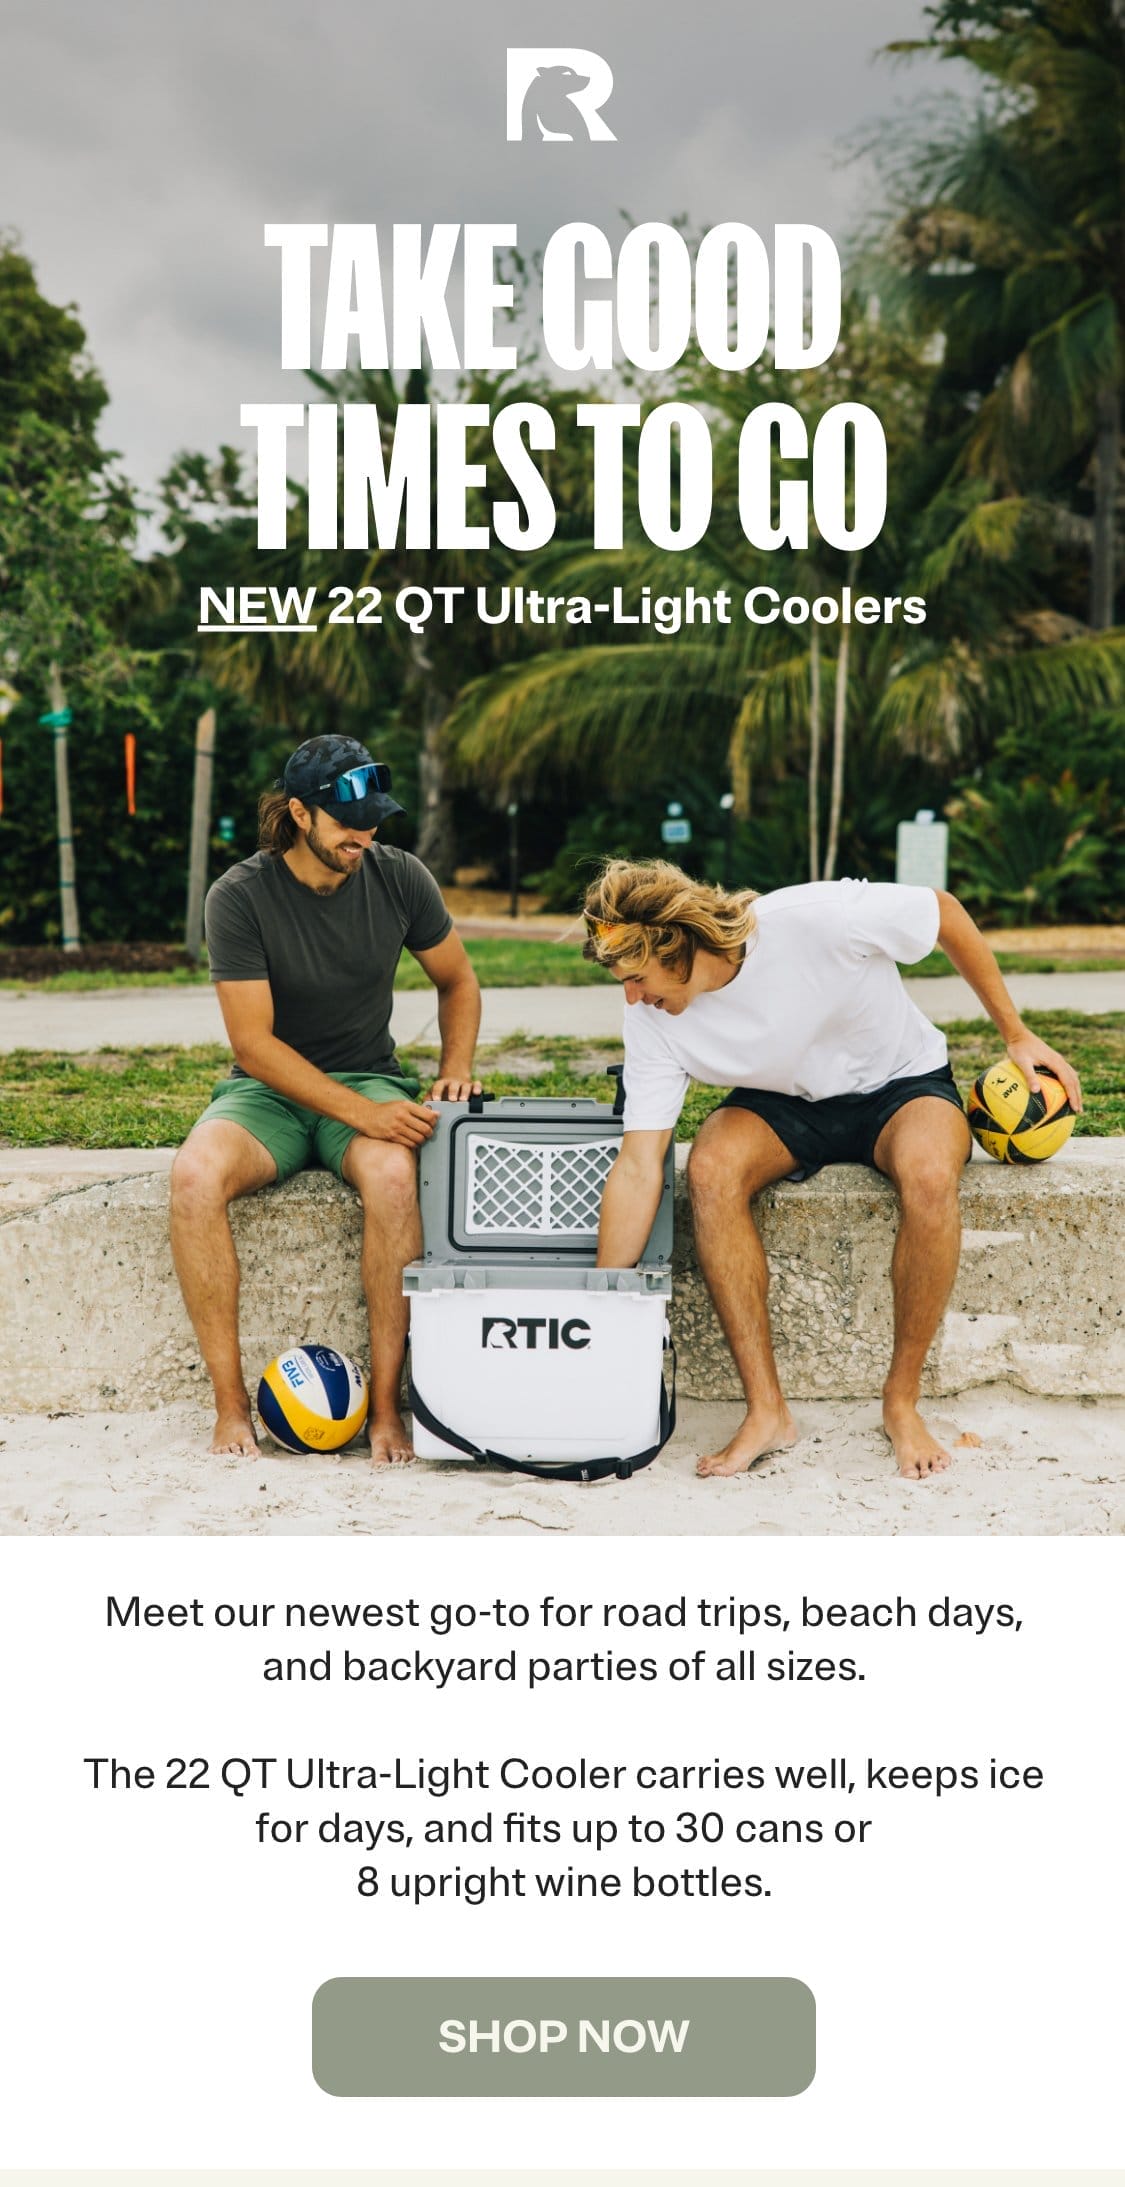 New 22 QT Ultra-Light Coolers